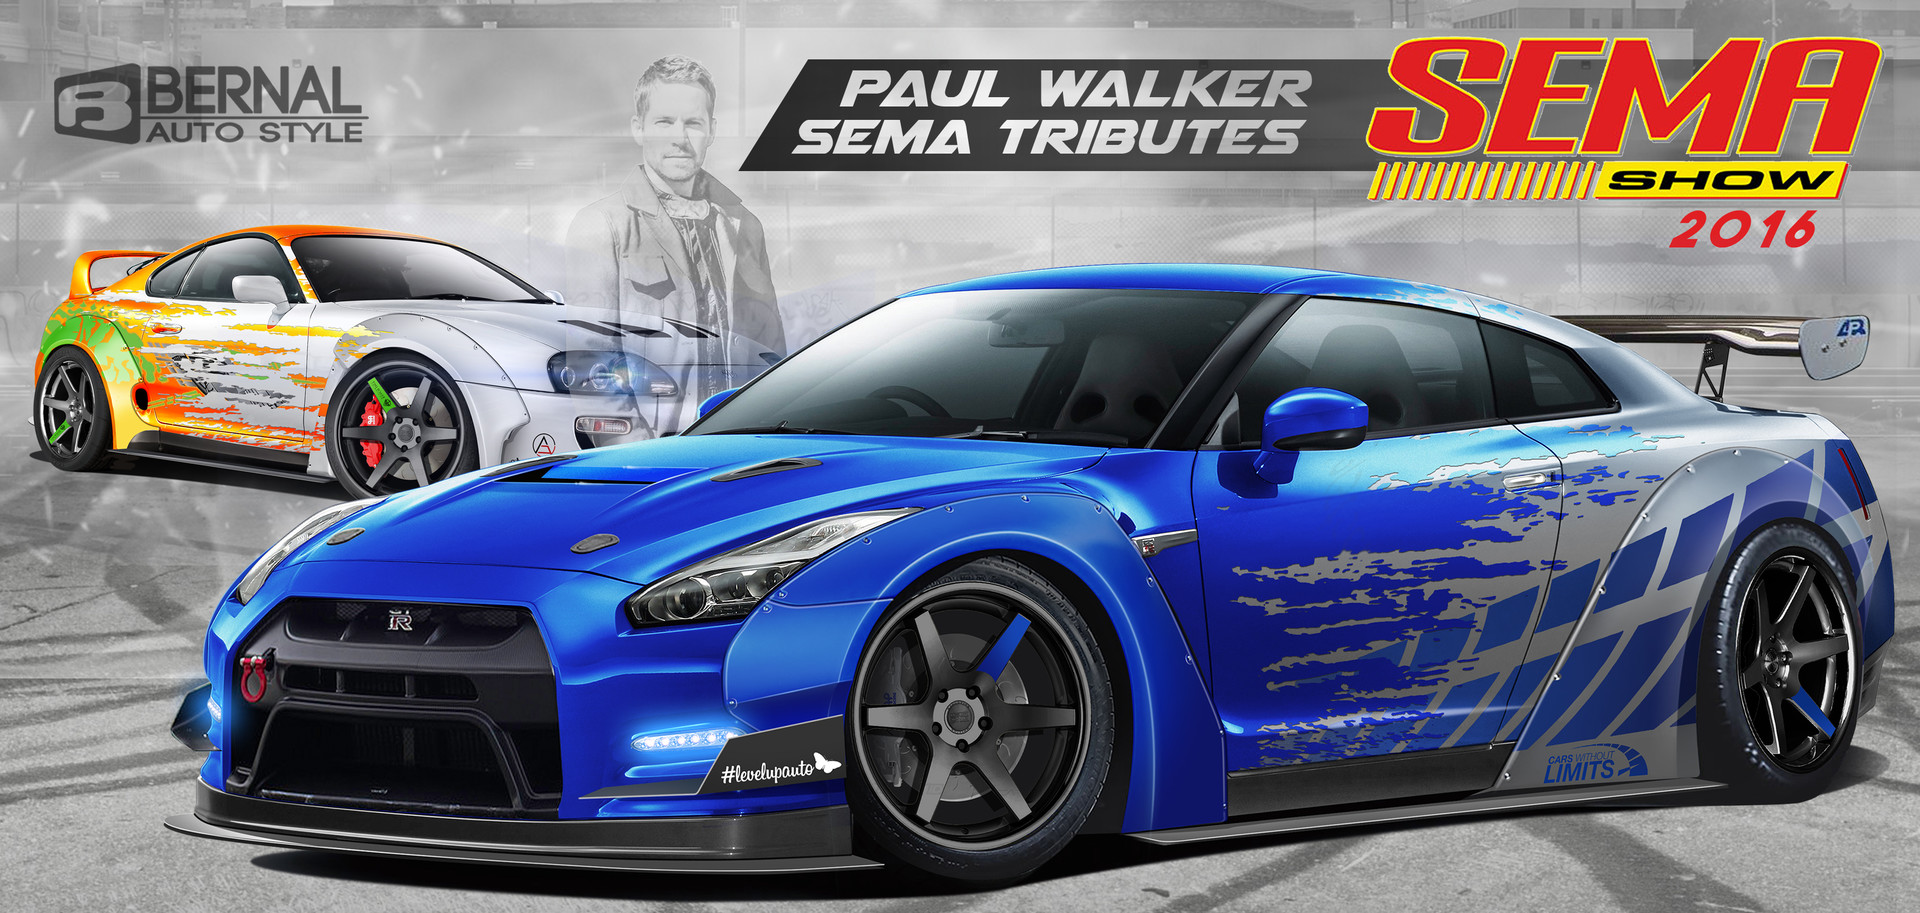 groei Verplicht Hinder Matt Bernal - Nissan GTR Paul Walker Tribute SEMA 2016